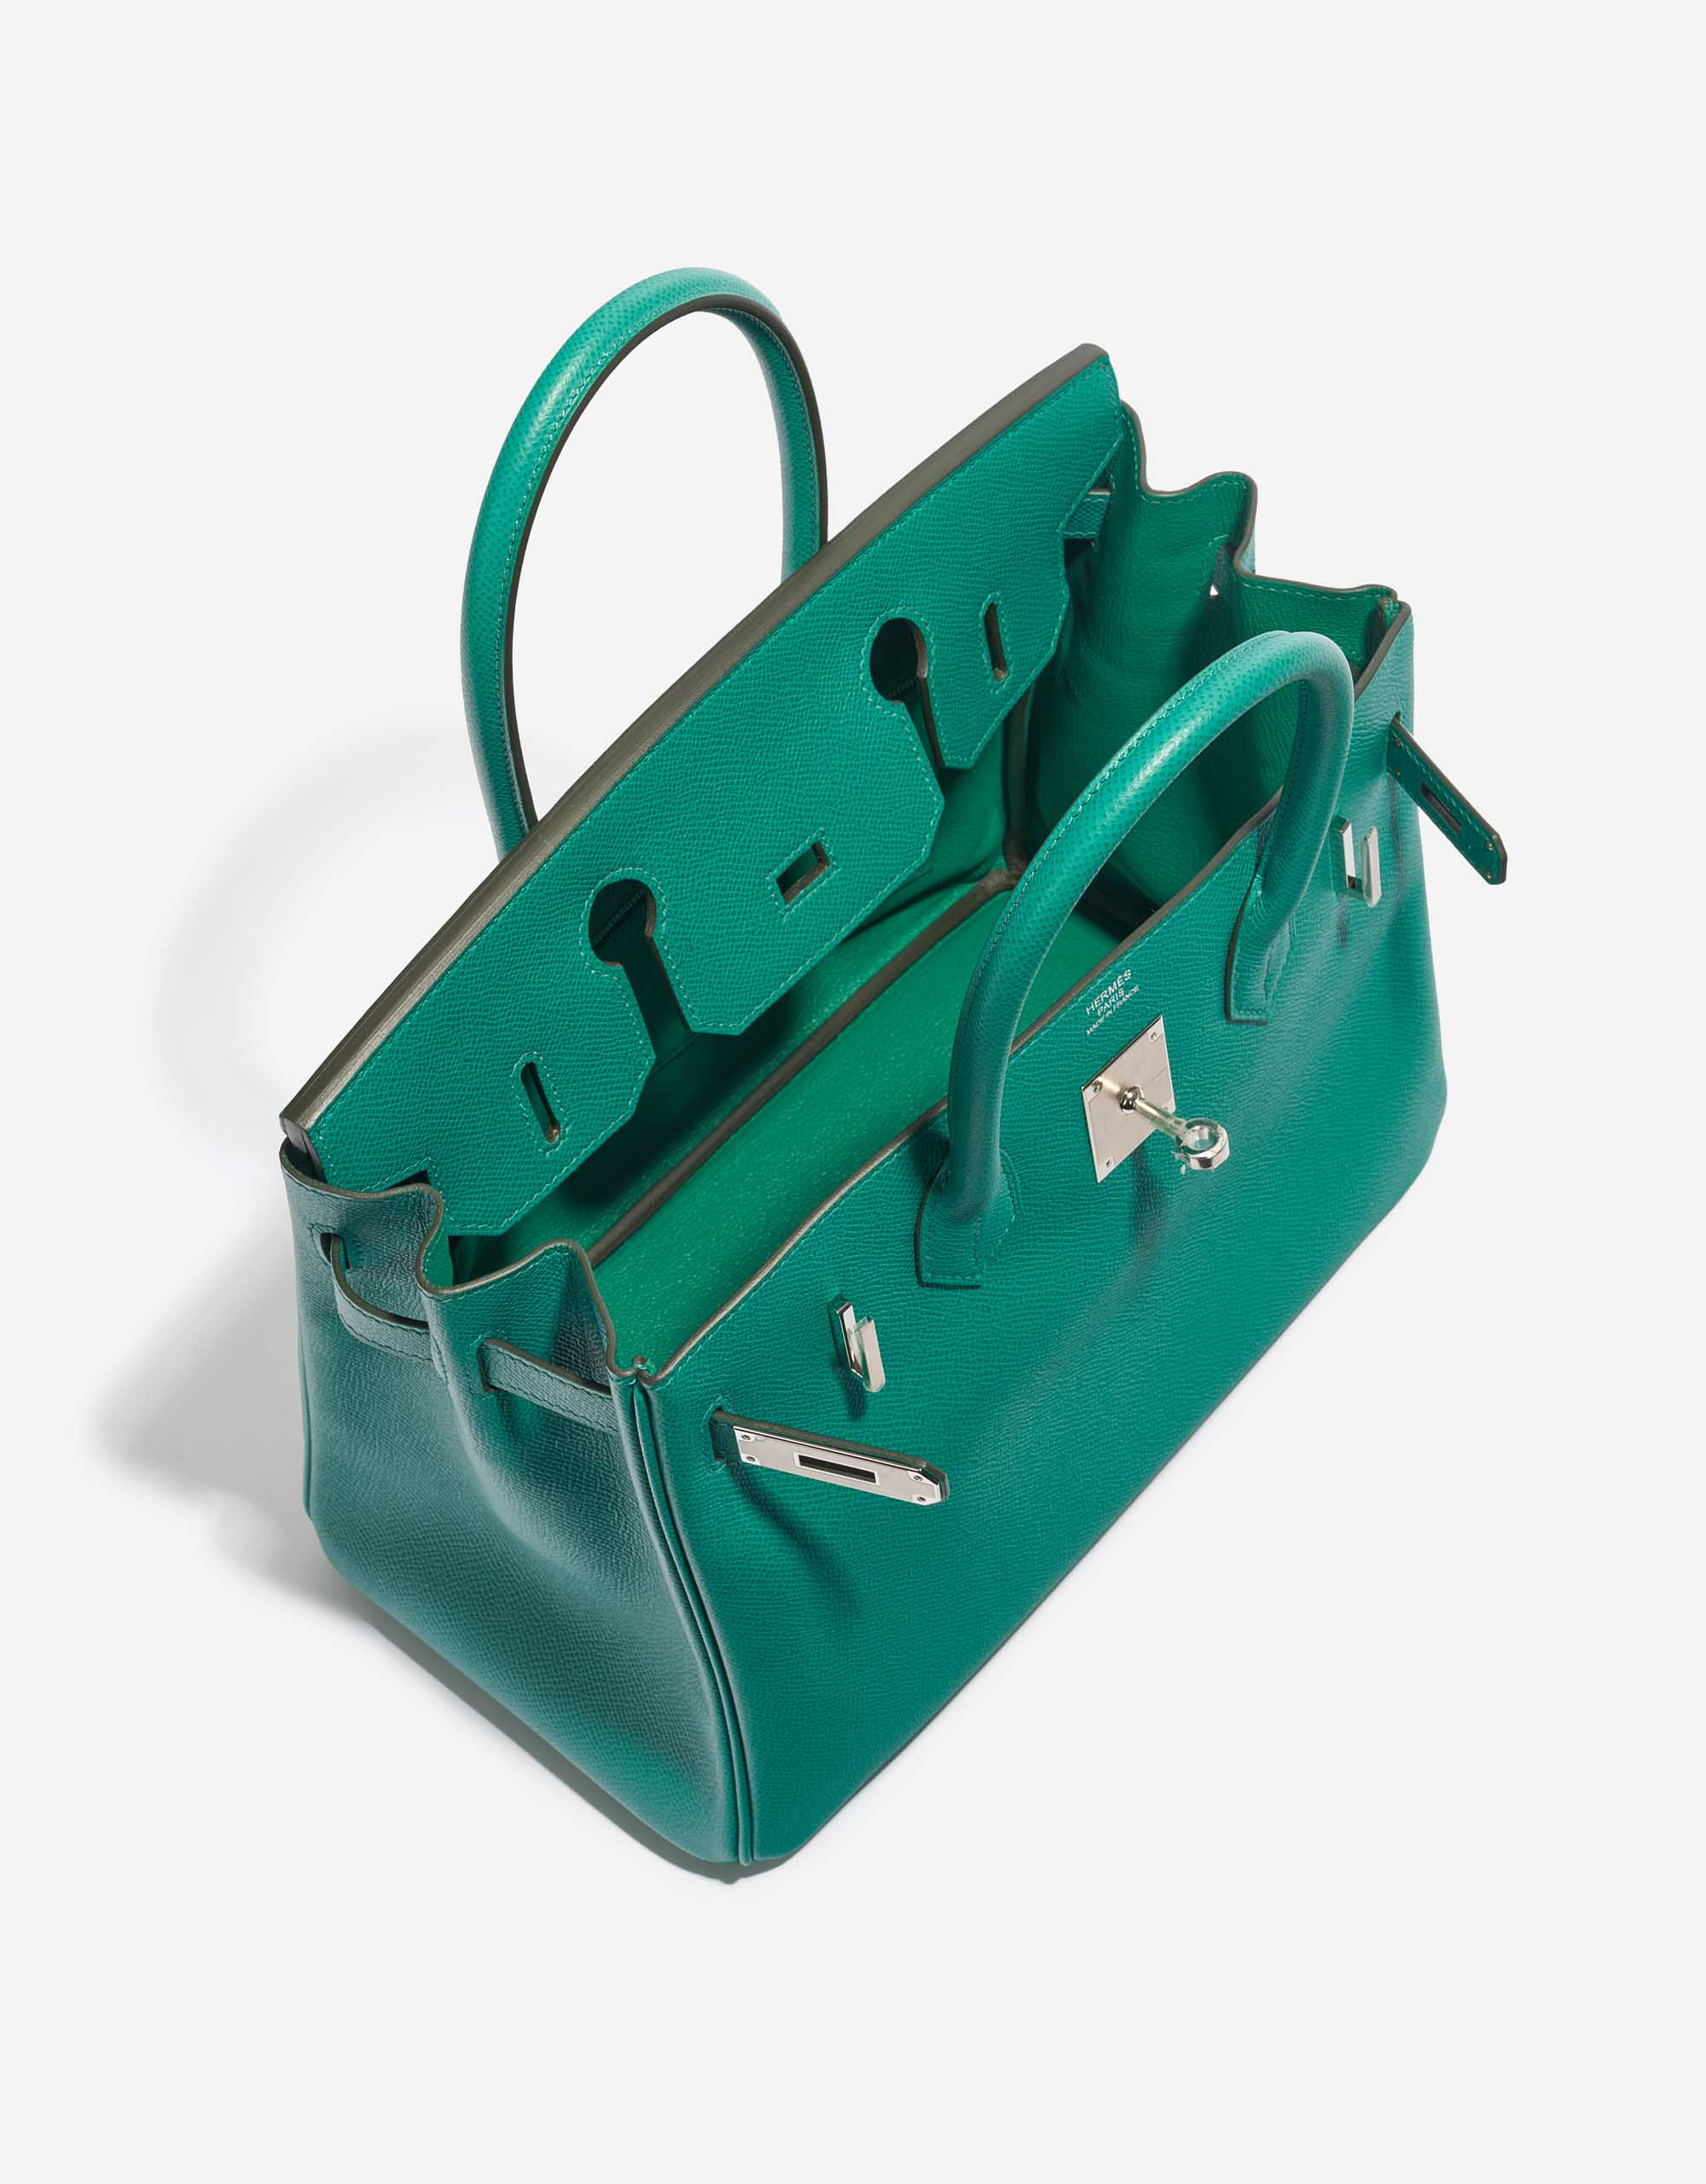 Sac Hermès d'occasion Birkin 30 Epsom Vert Jade Green Inside | Vendez votre sac de créateur sur Saclab.com